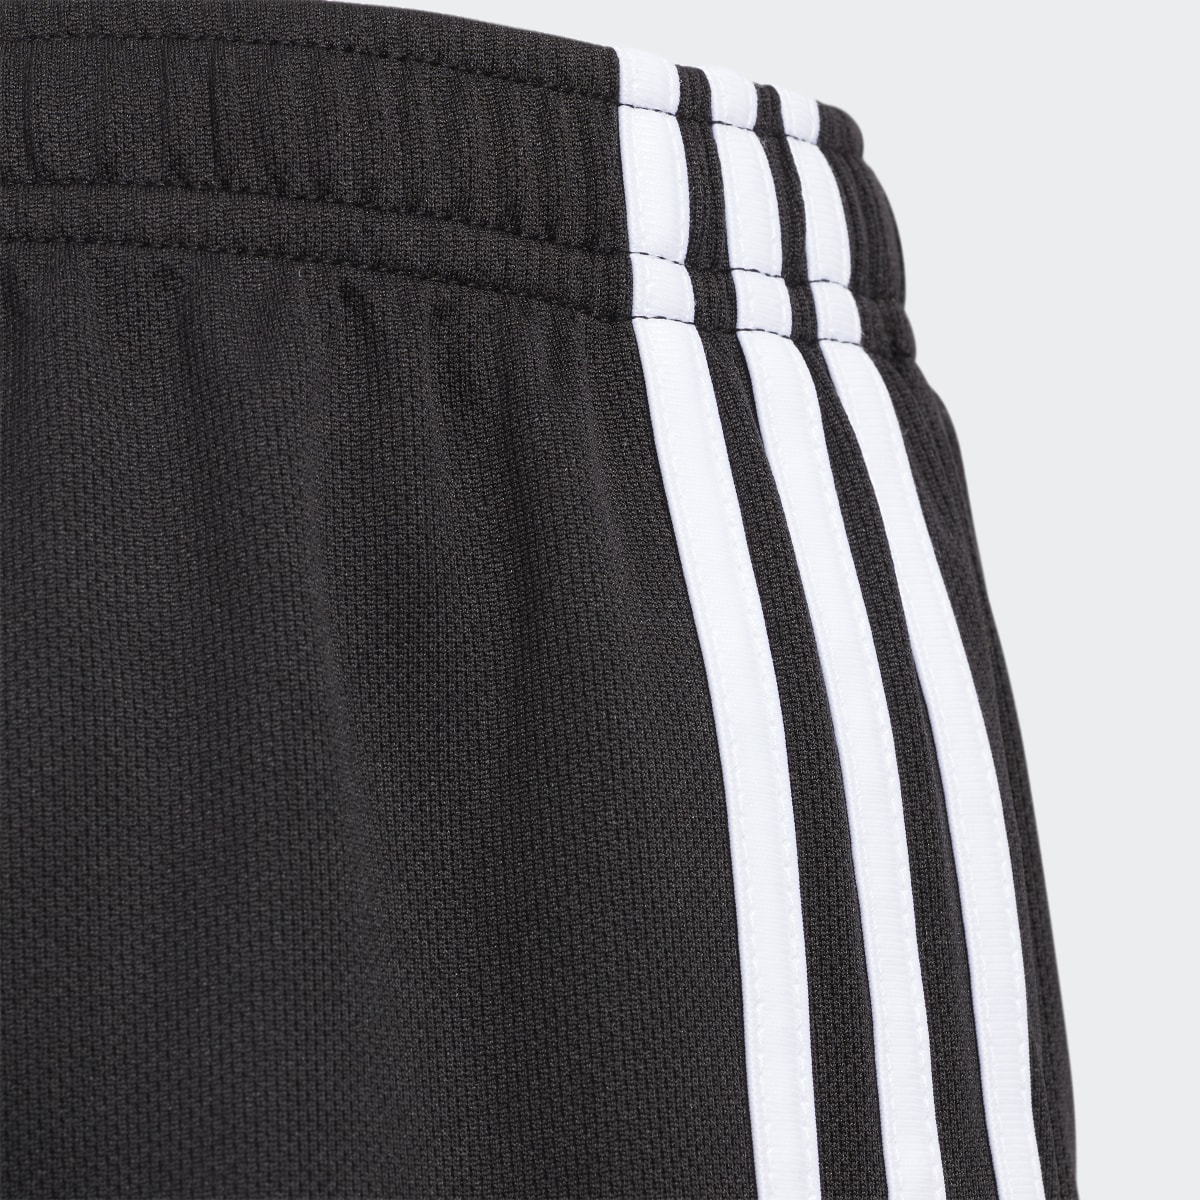 Adidas 3-Stripes Mesh Shorts. 5